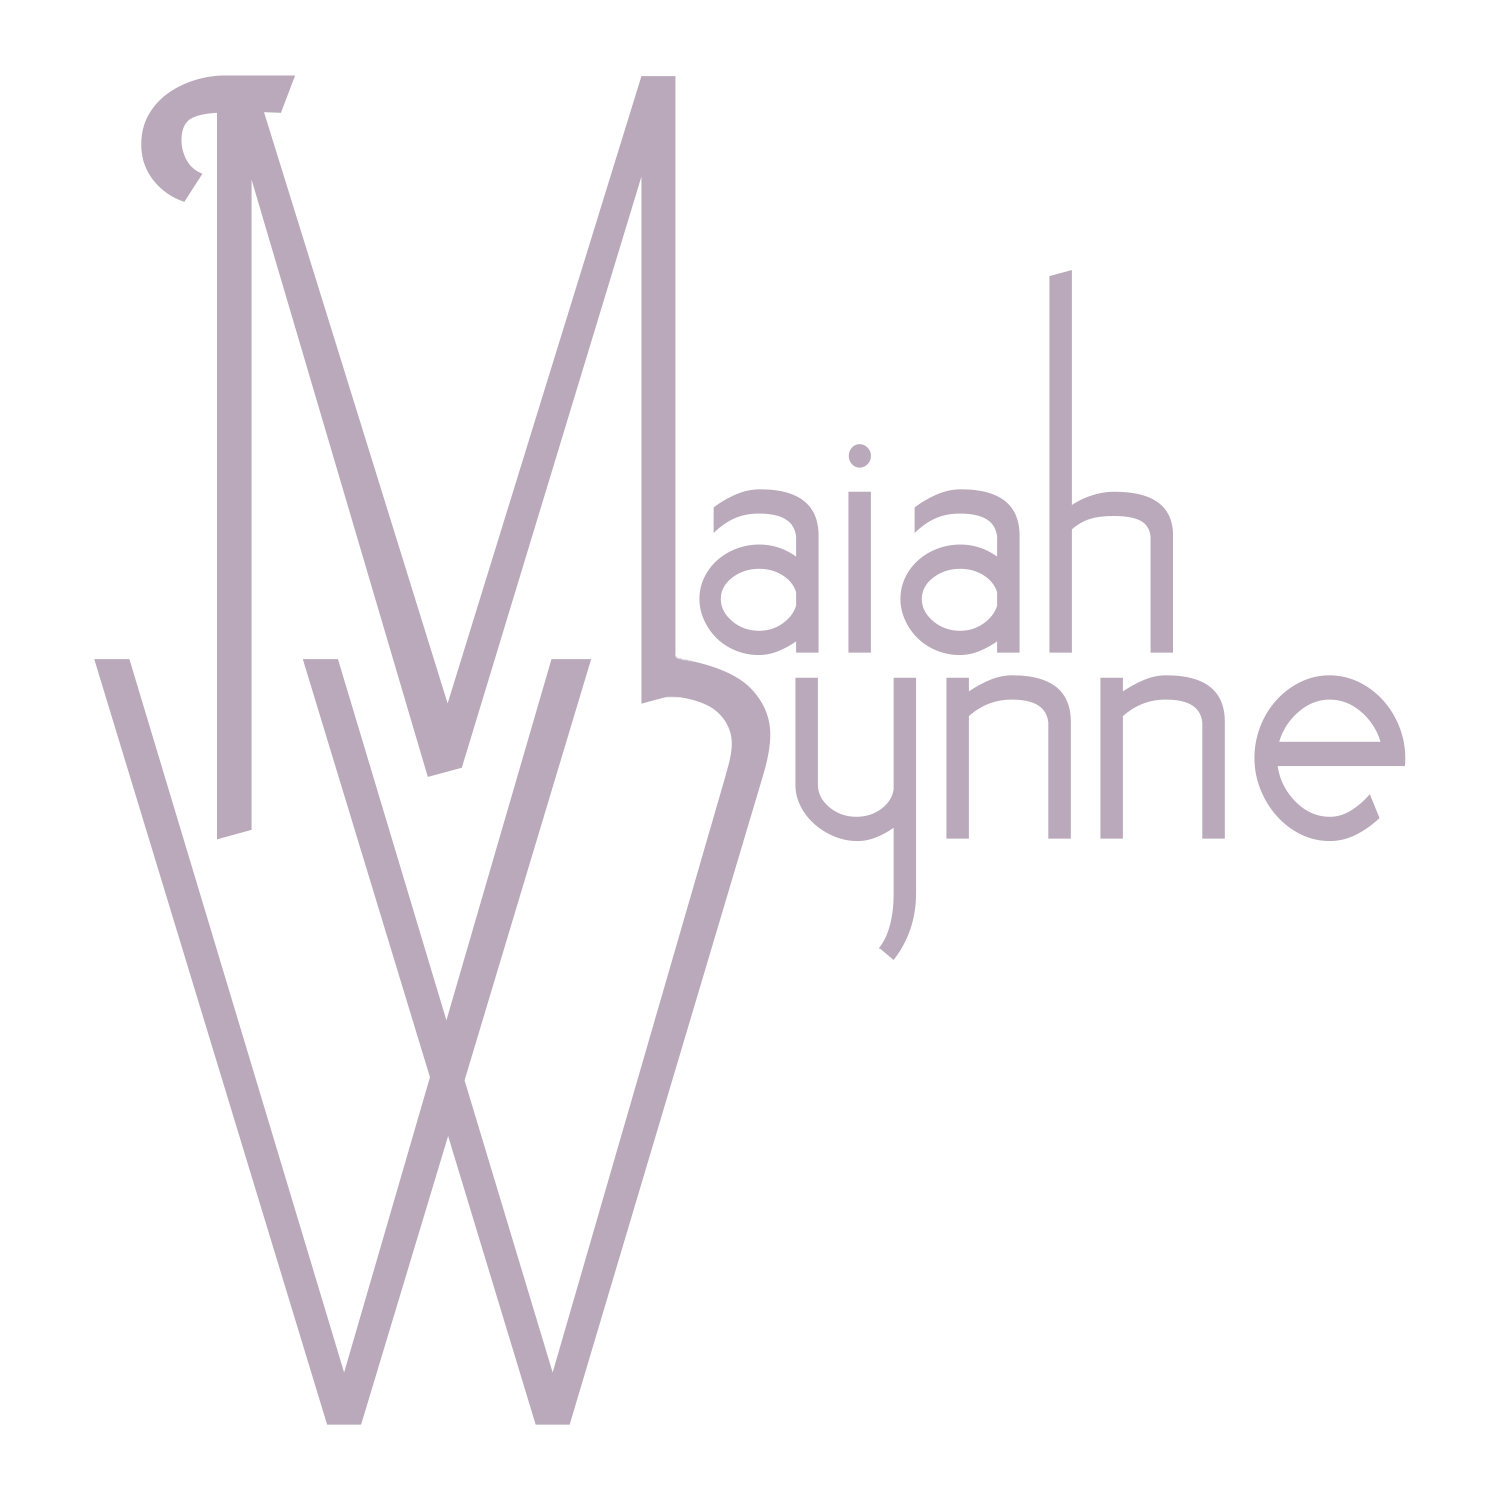 Maiah Wynne